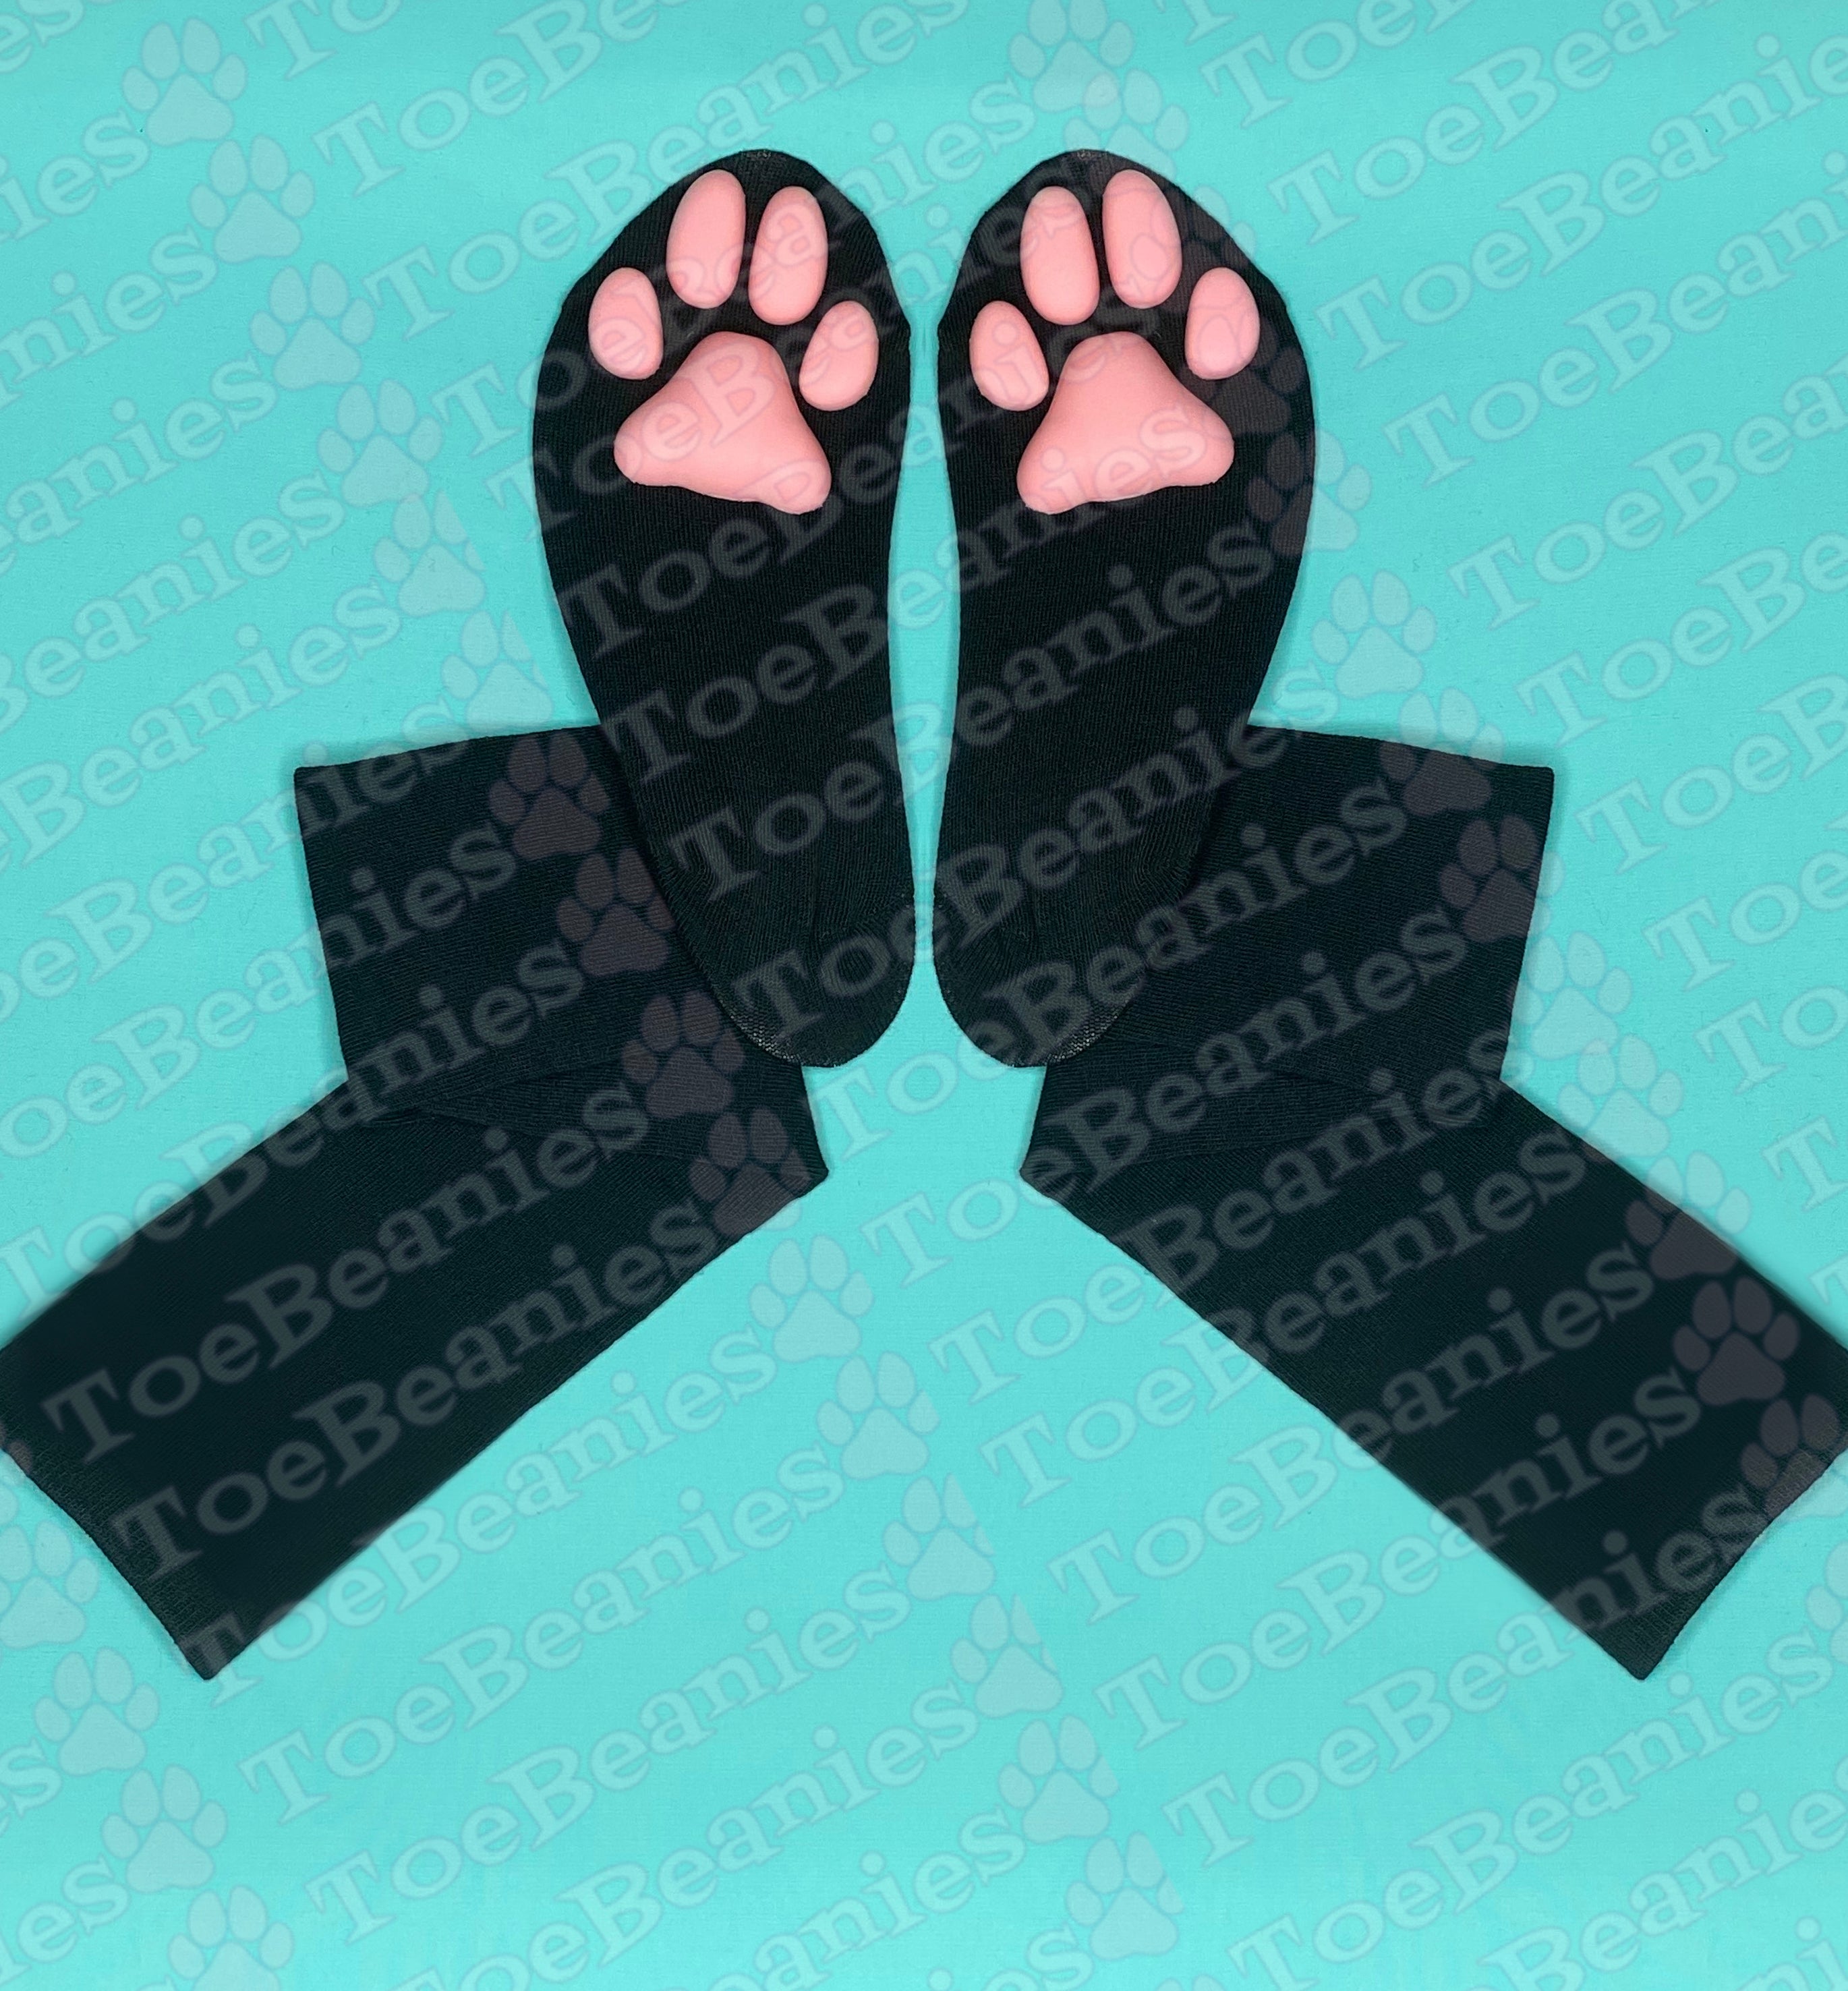 PREORDER Pink ToeBeanies on Solid Black Socks